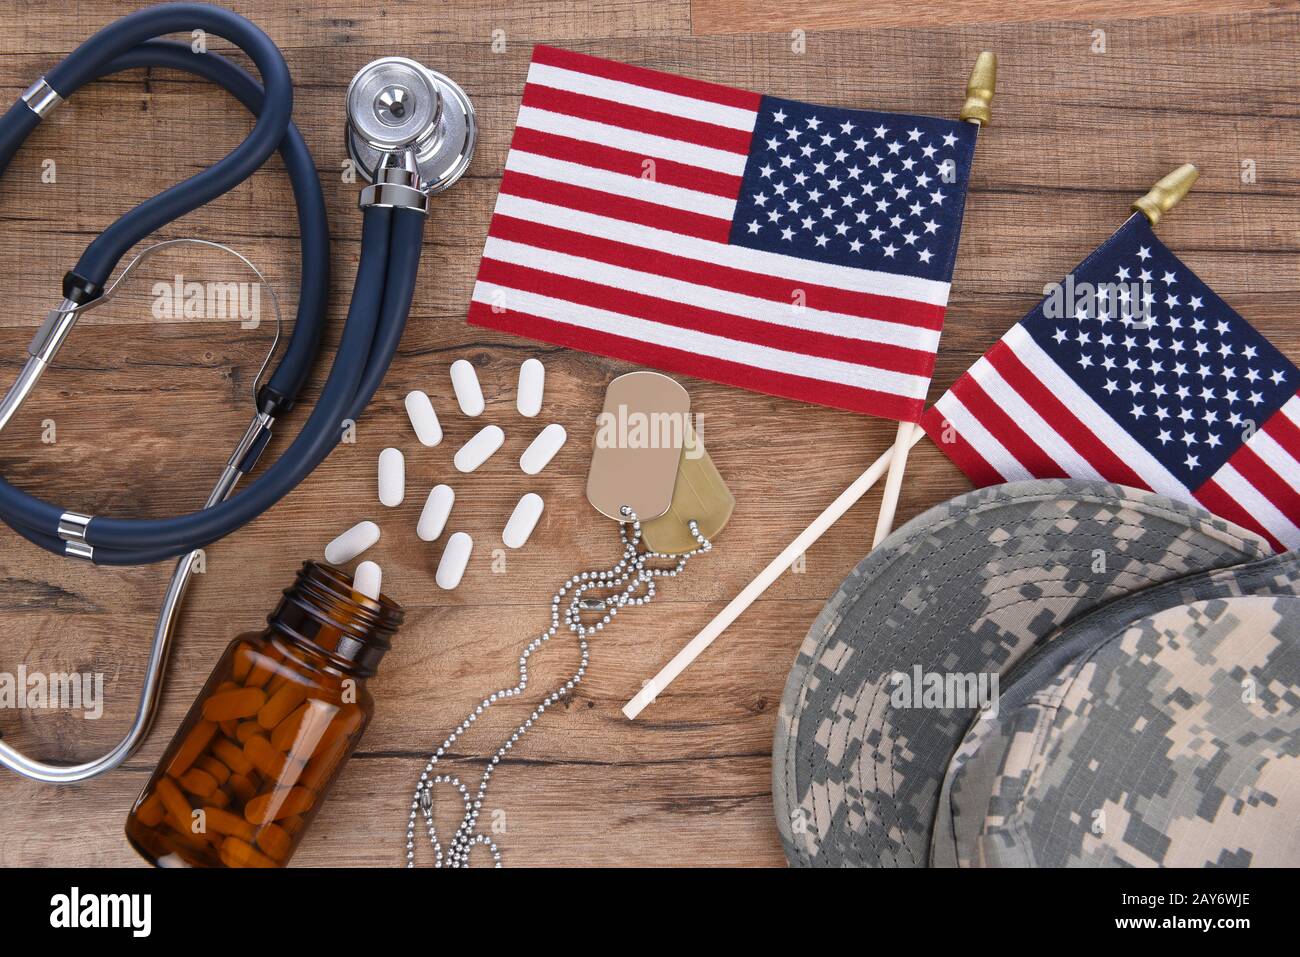 Concept De Soins De Santé Militaires. Chapeau de camouflage, étiquettes de chien, stéthoscope, pilules, et drapeaux américains sur un fond de bois. Banque D'Images